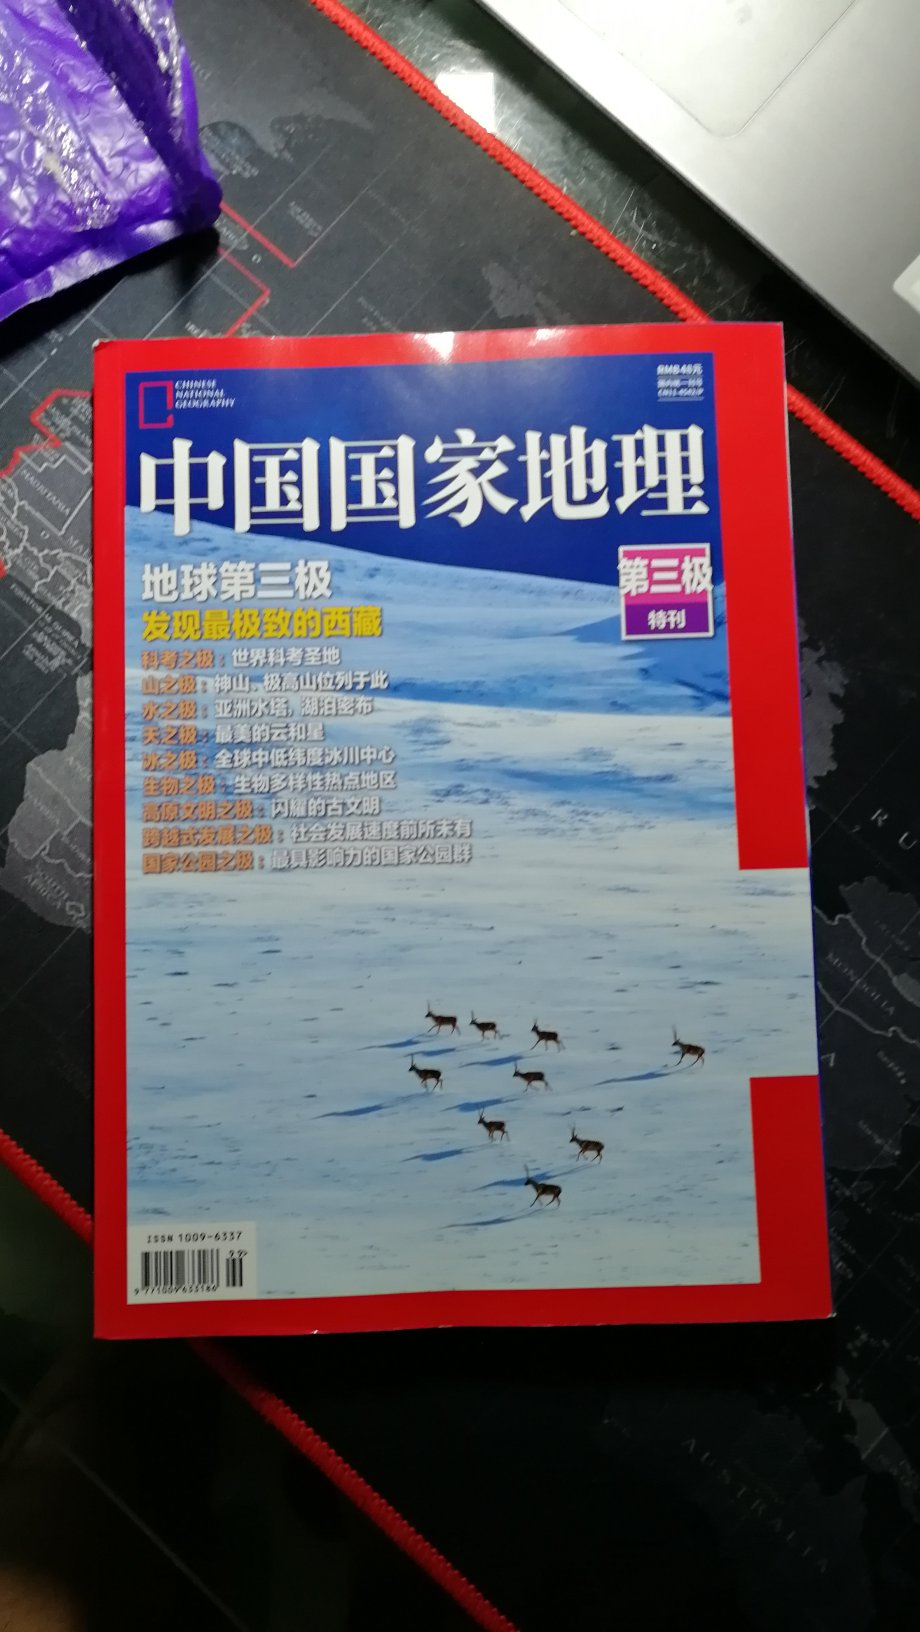 中国国家地理已经购买多年了，今年特刊介绍青藏高原，质量不错！